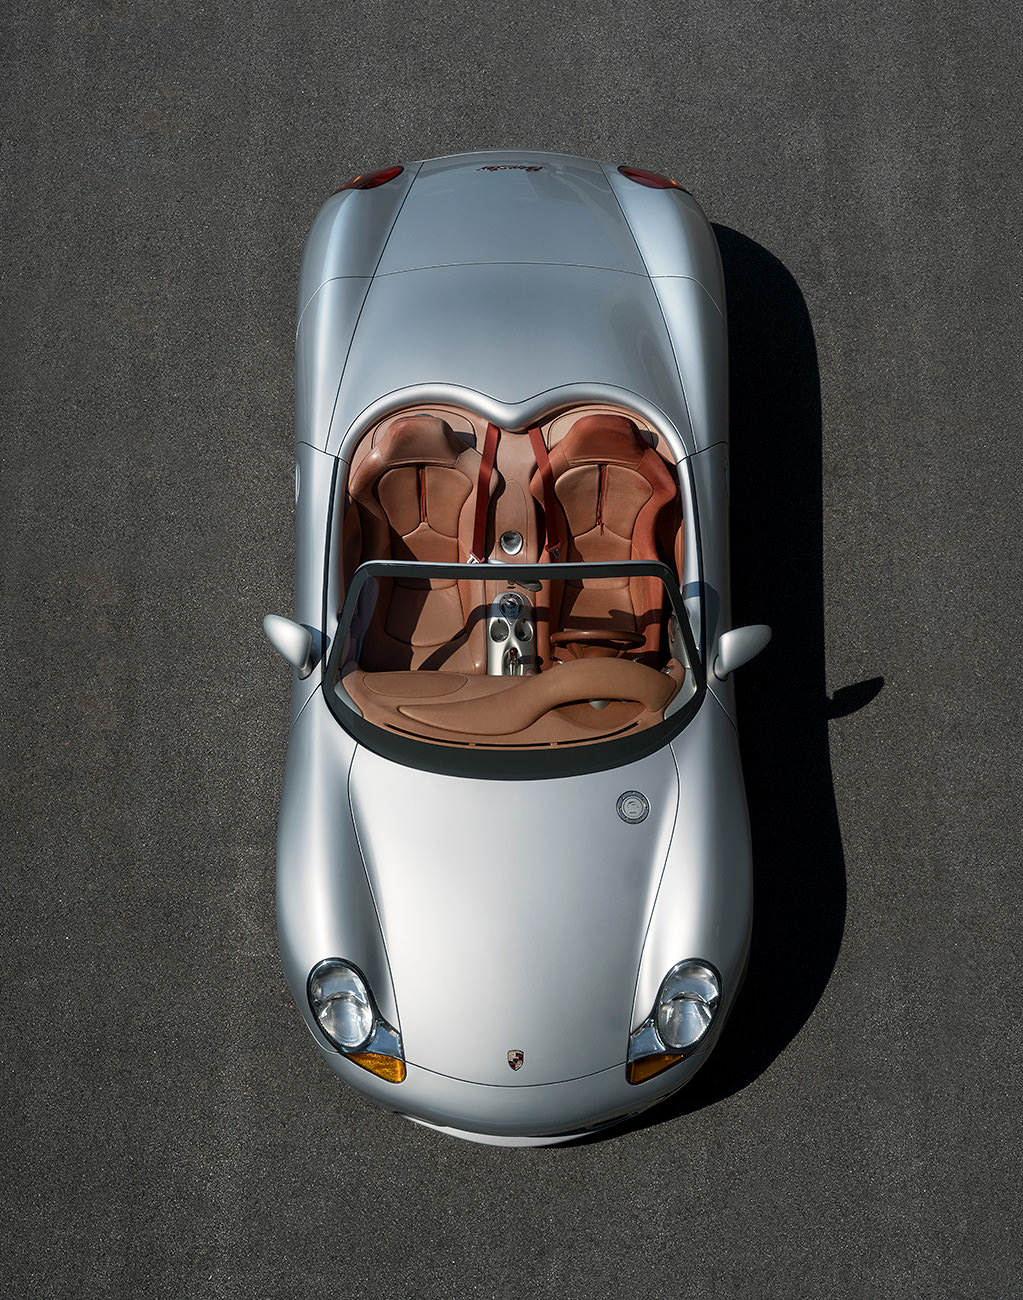 Porsche Boxster Concept - 000 Magazine